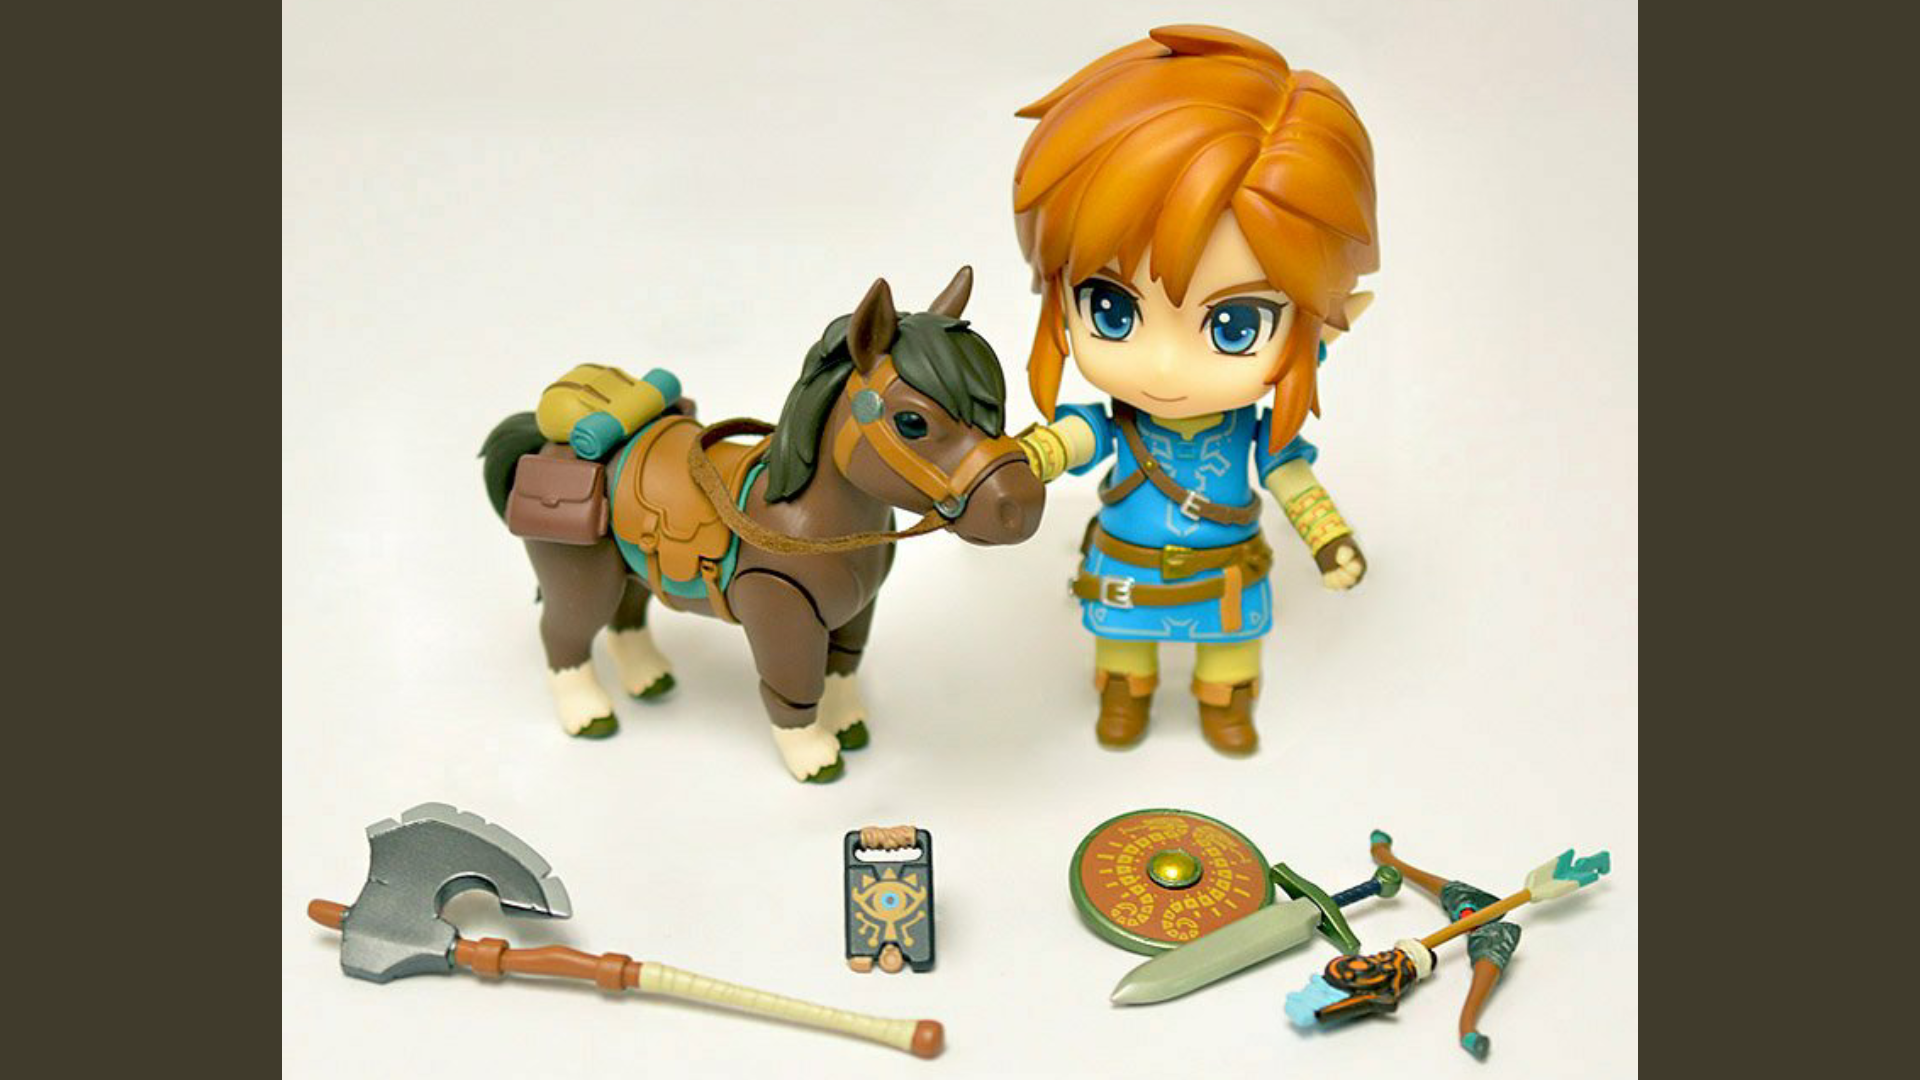 Esta genial Edición Deluxe del Nendoroid de Link en Zelda: Breath of the Wild llega a la Nintendo NY